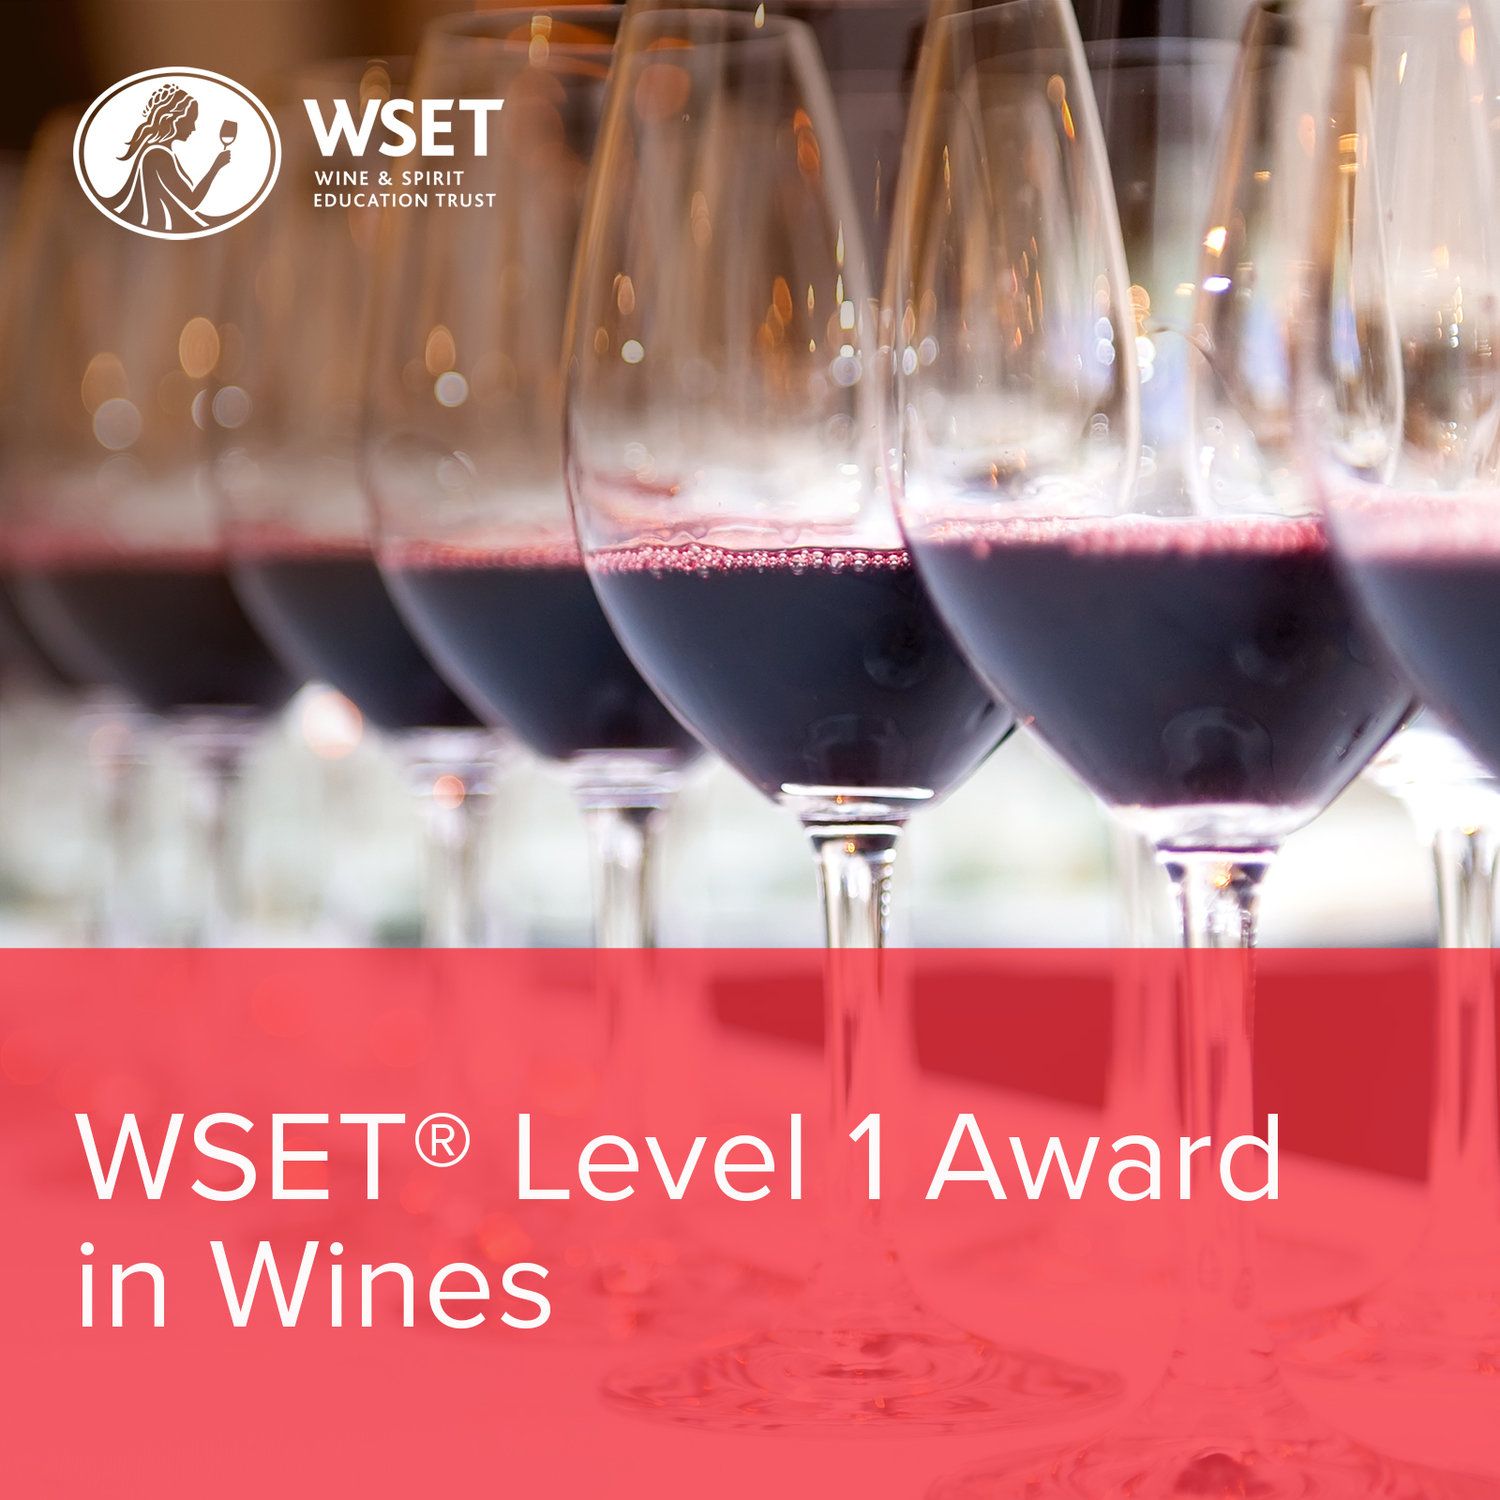 Acing the WSET Level 1 wine exam